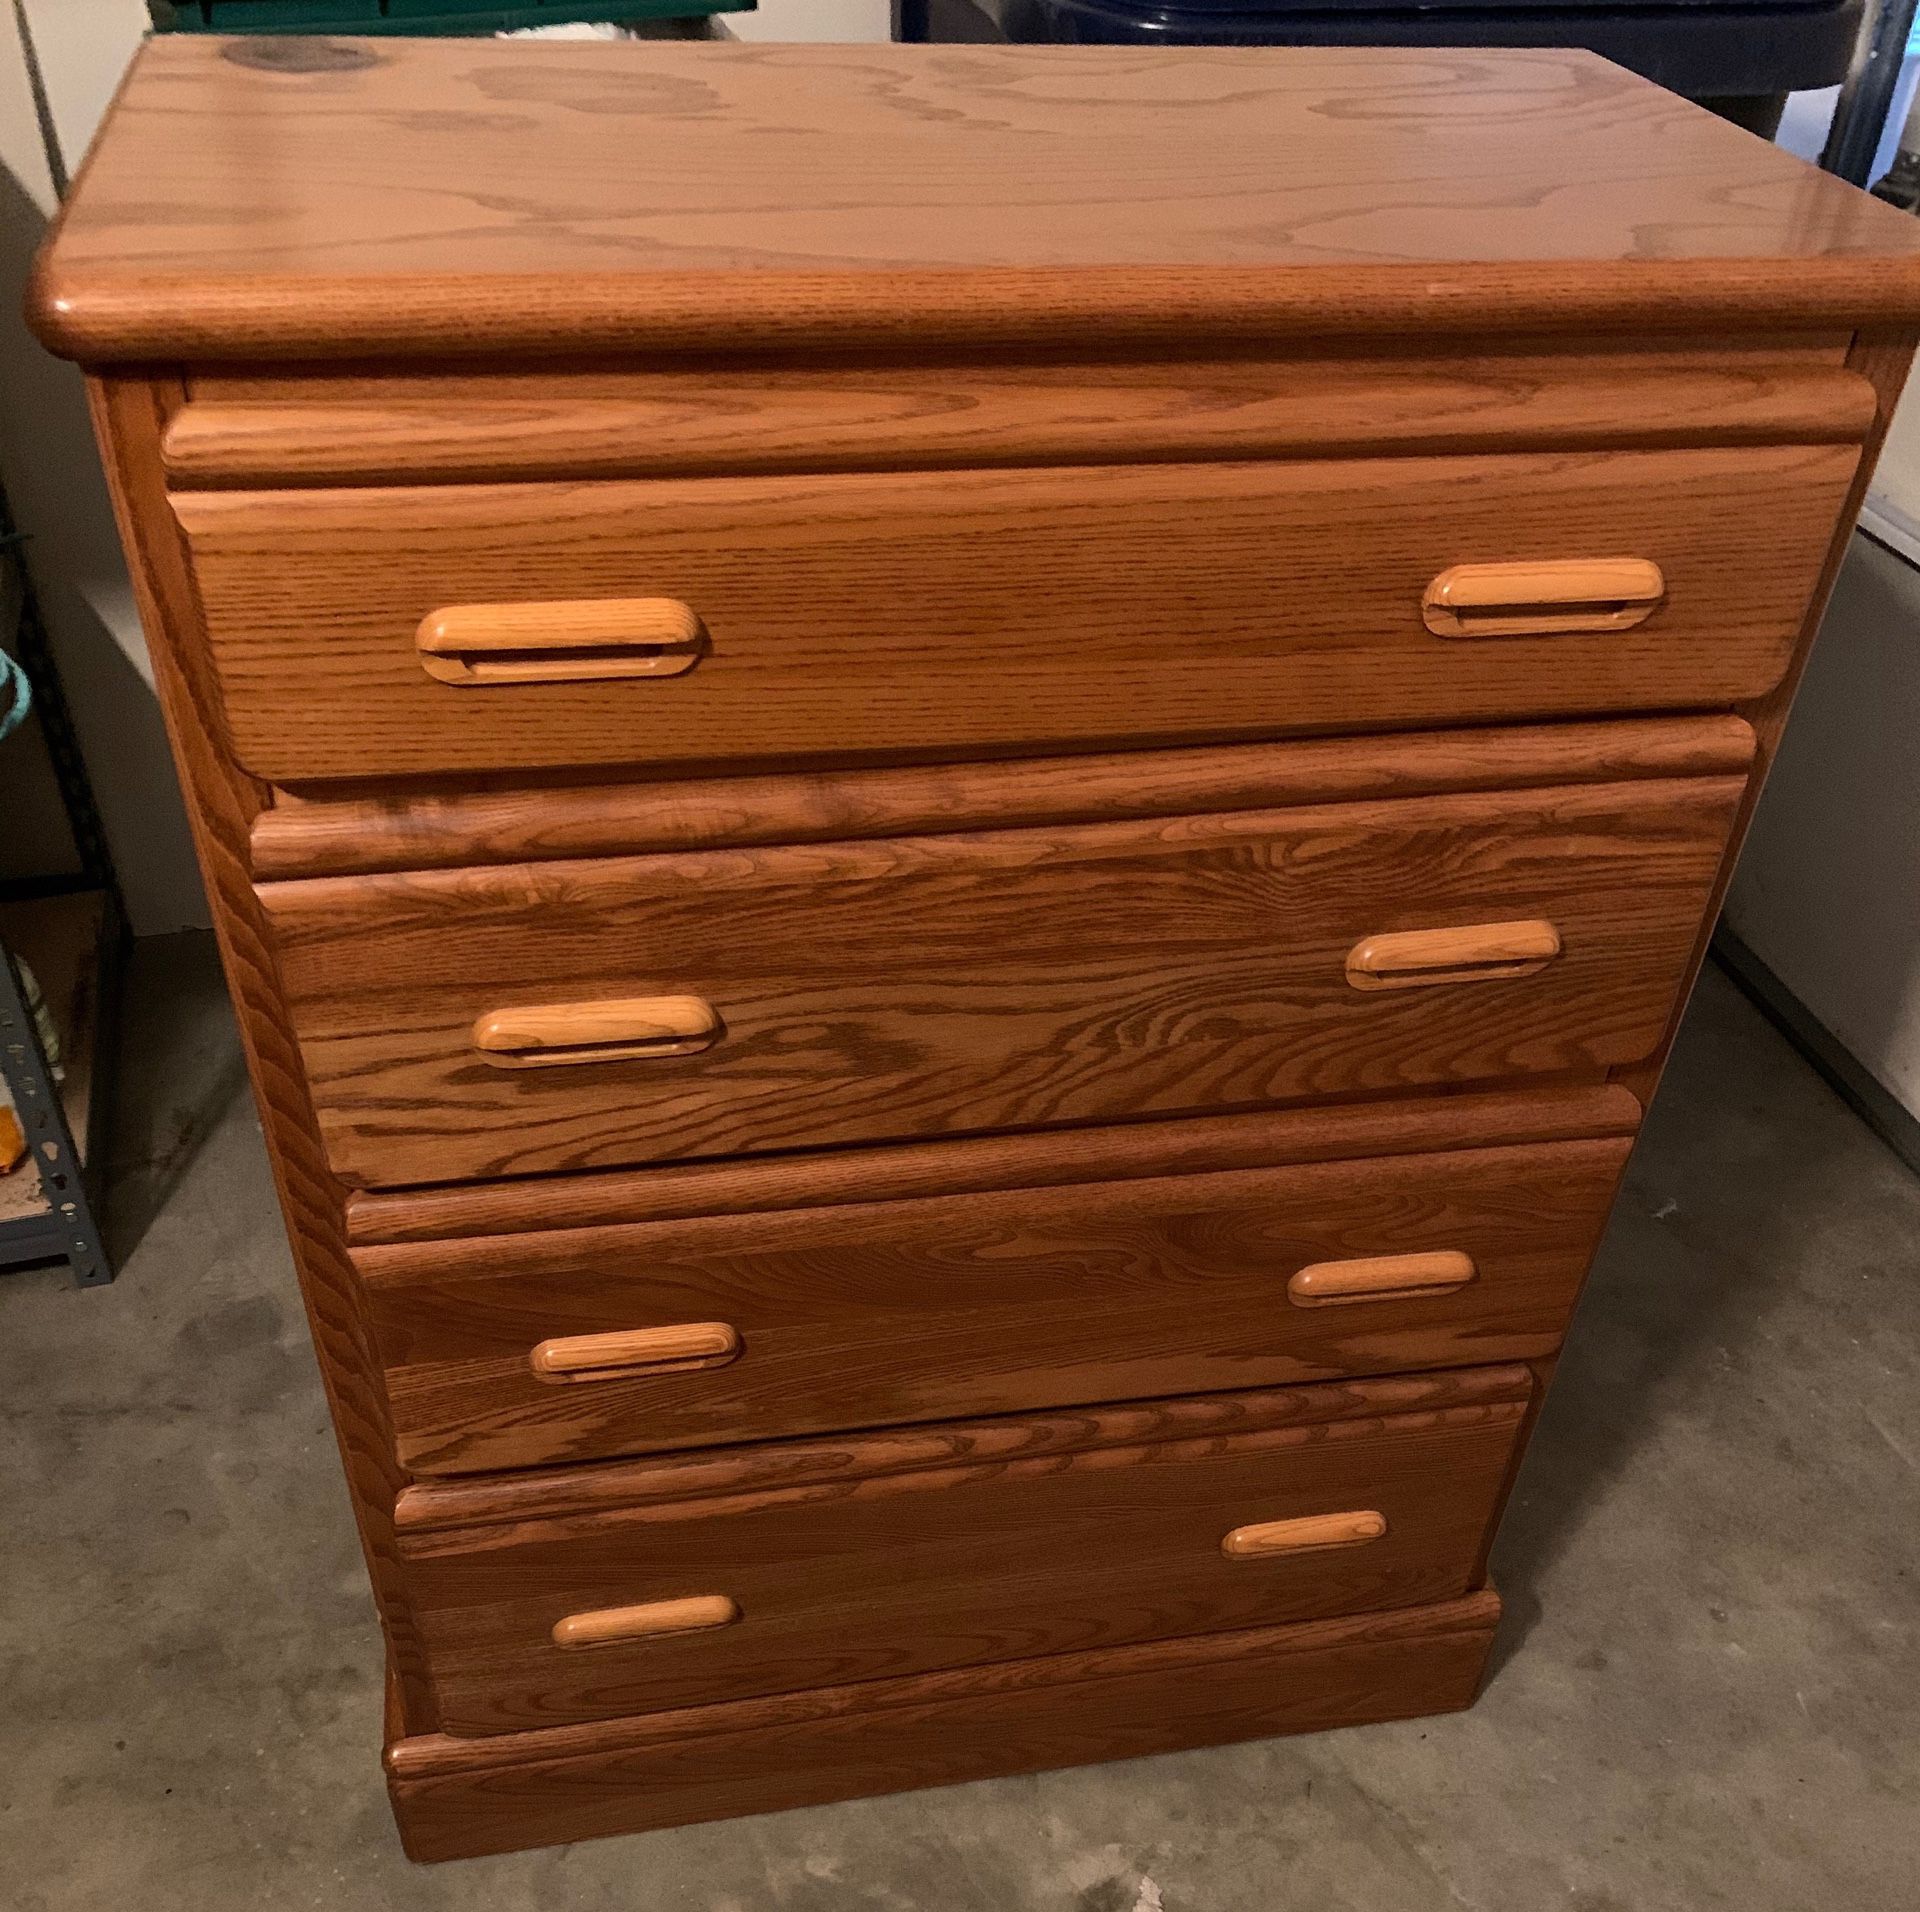 Solid wood Dresser $80 OBO